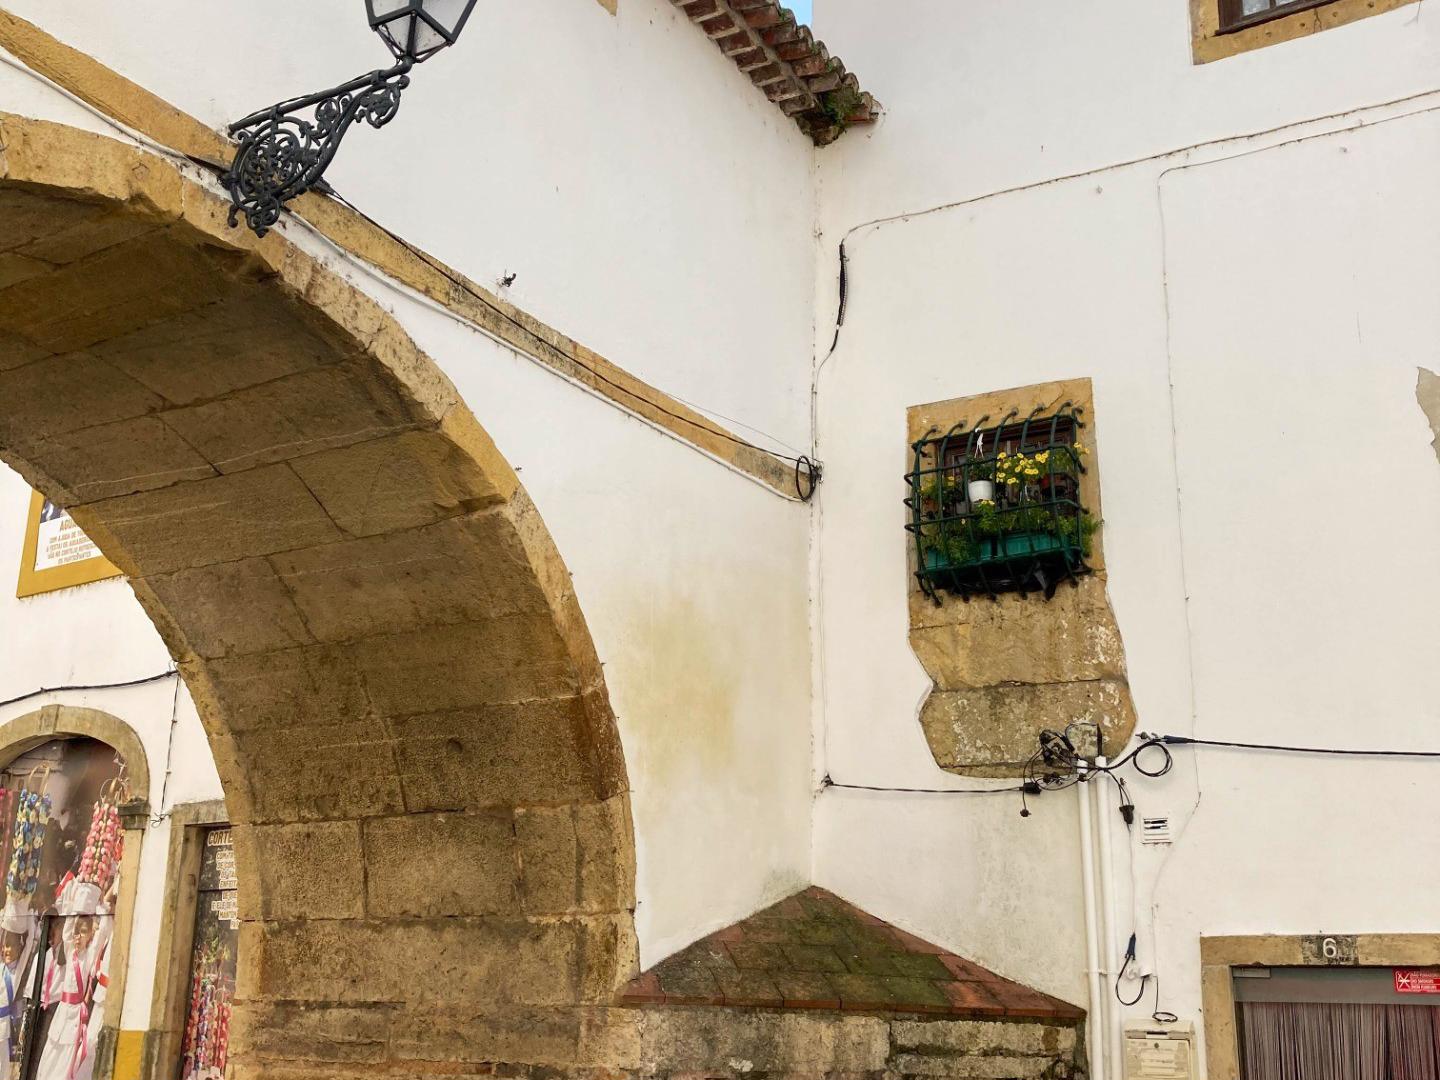 Pormenor - O Arco das Freiras, em Tomar, é um arco de volta inteira sobre a Rua de Santa Iria, que é uma passagem aérea que liga o Convento de Santa Iria ao antigo Palácio de Frei António de Lisboa. A sua origem remonta ao século XVI.